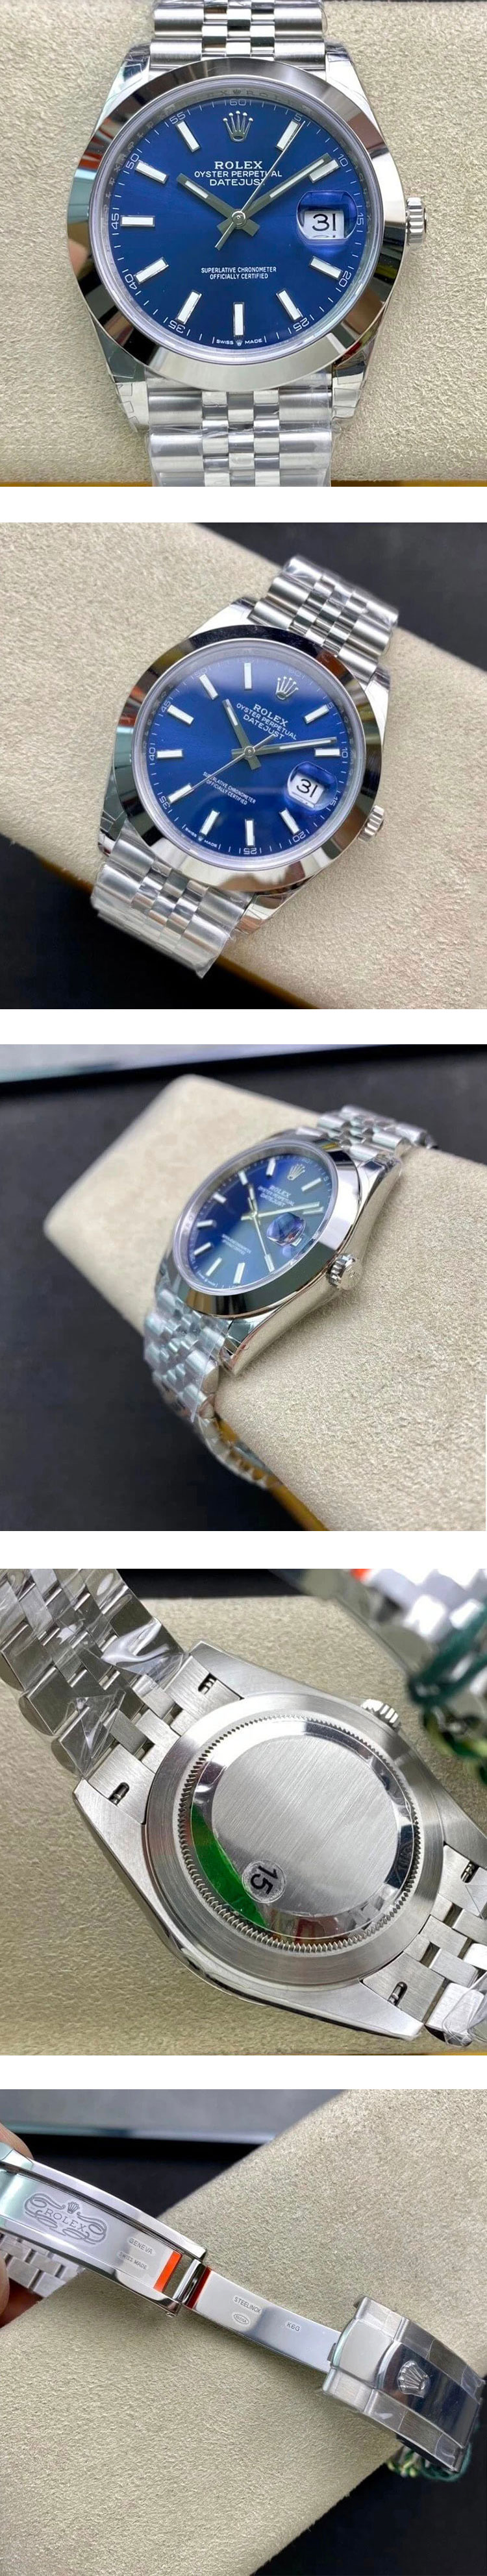 最高品質ロレックス時計コピーM126300-0002 レビュー デイトジャスト 41mm ブルー OY